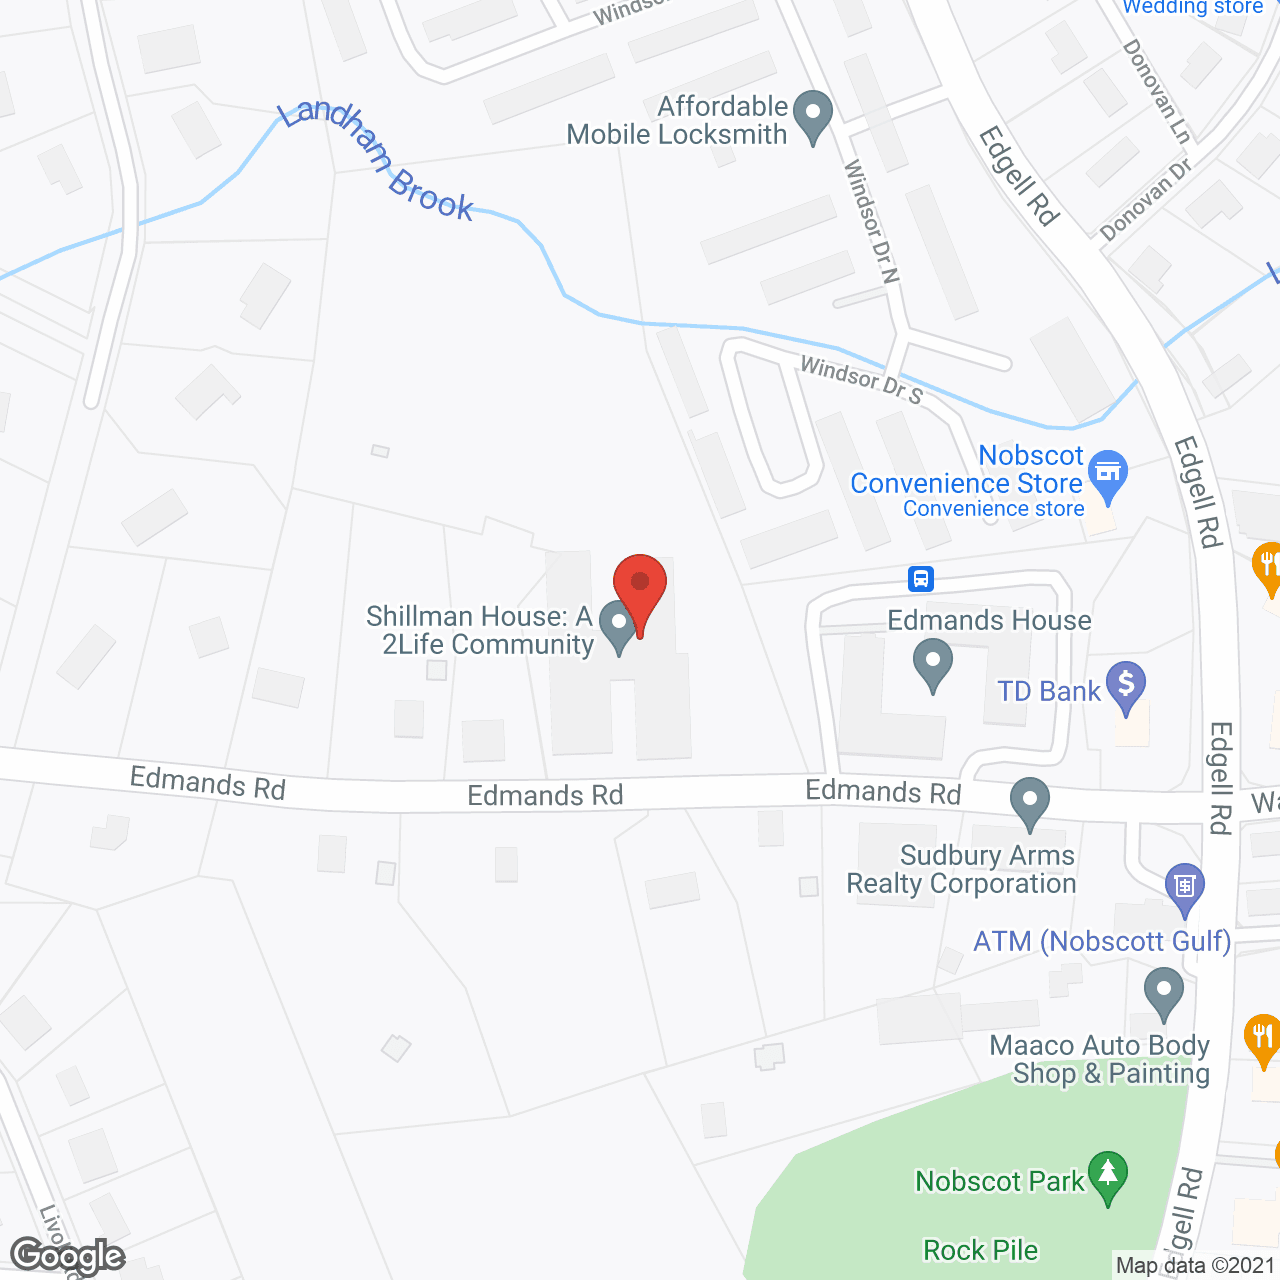 Shillman House in google map